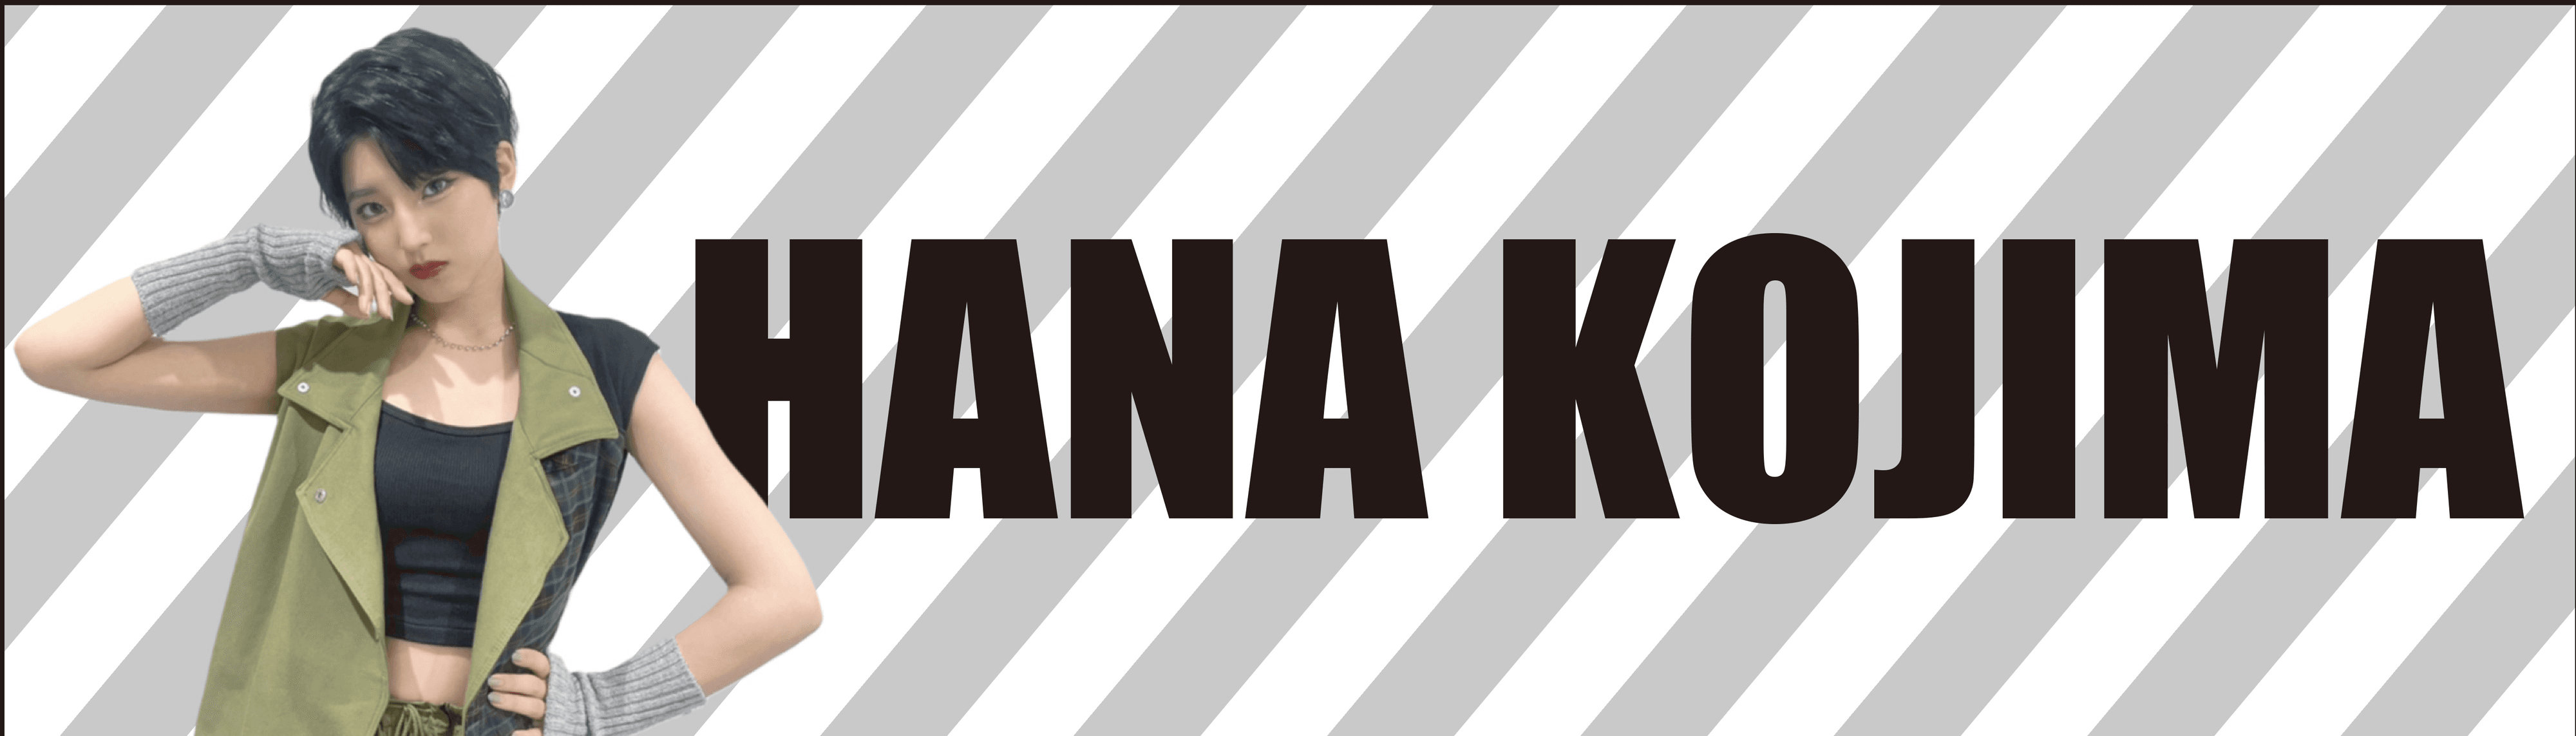 HanaKojima banner